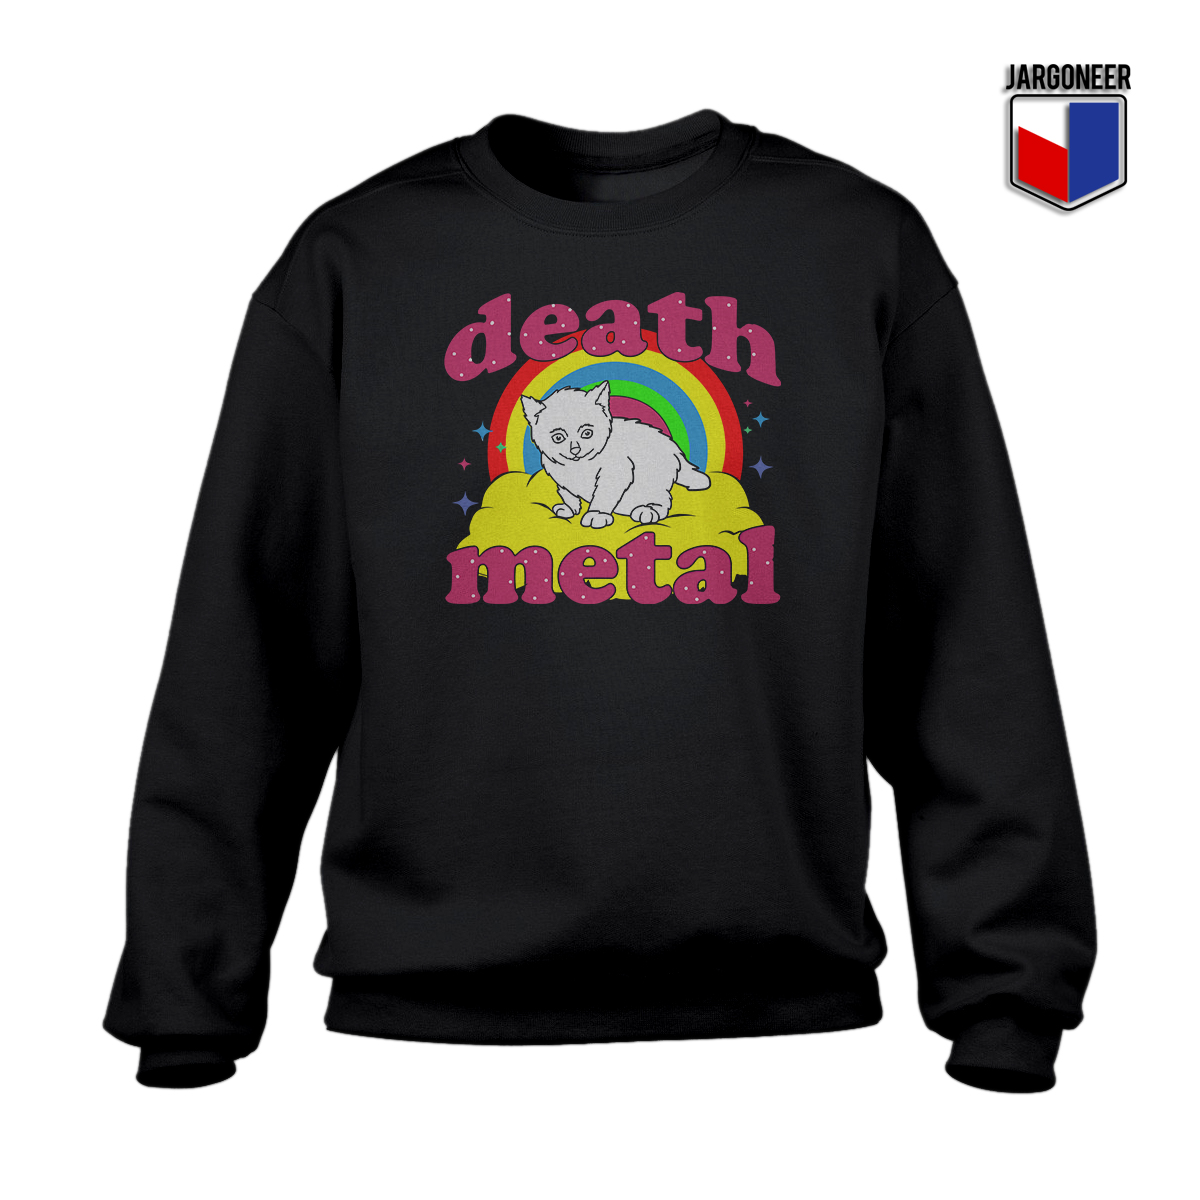 Death Metal Black SS - Shop Unique Graphic Cool Shirt Designs